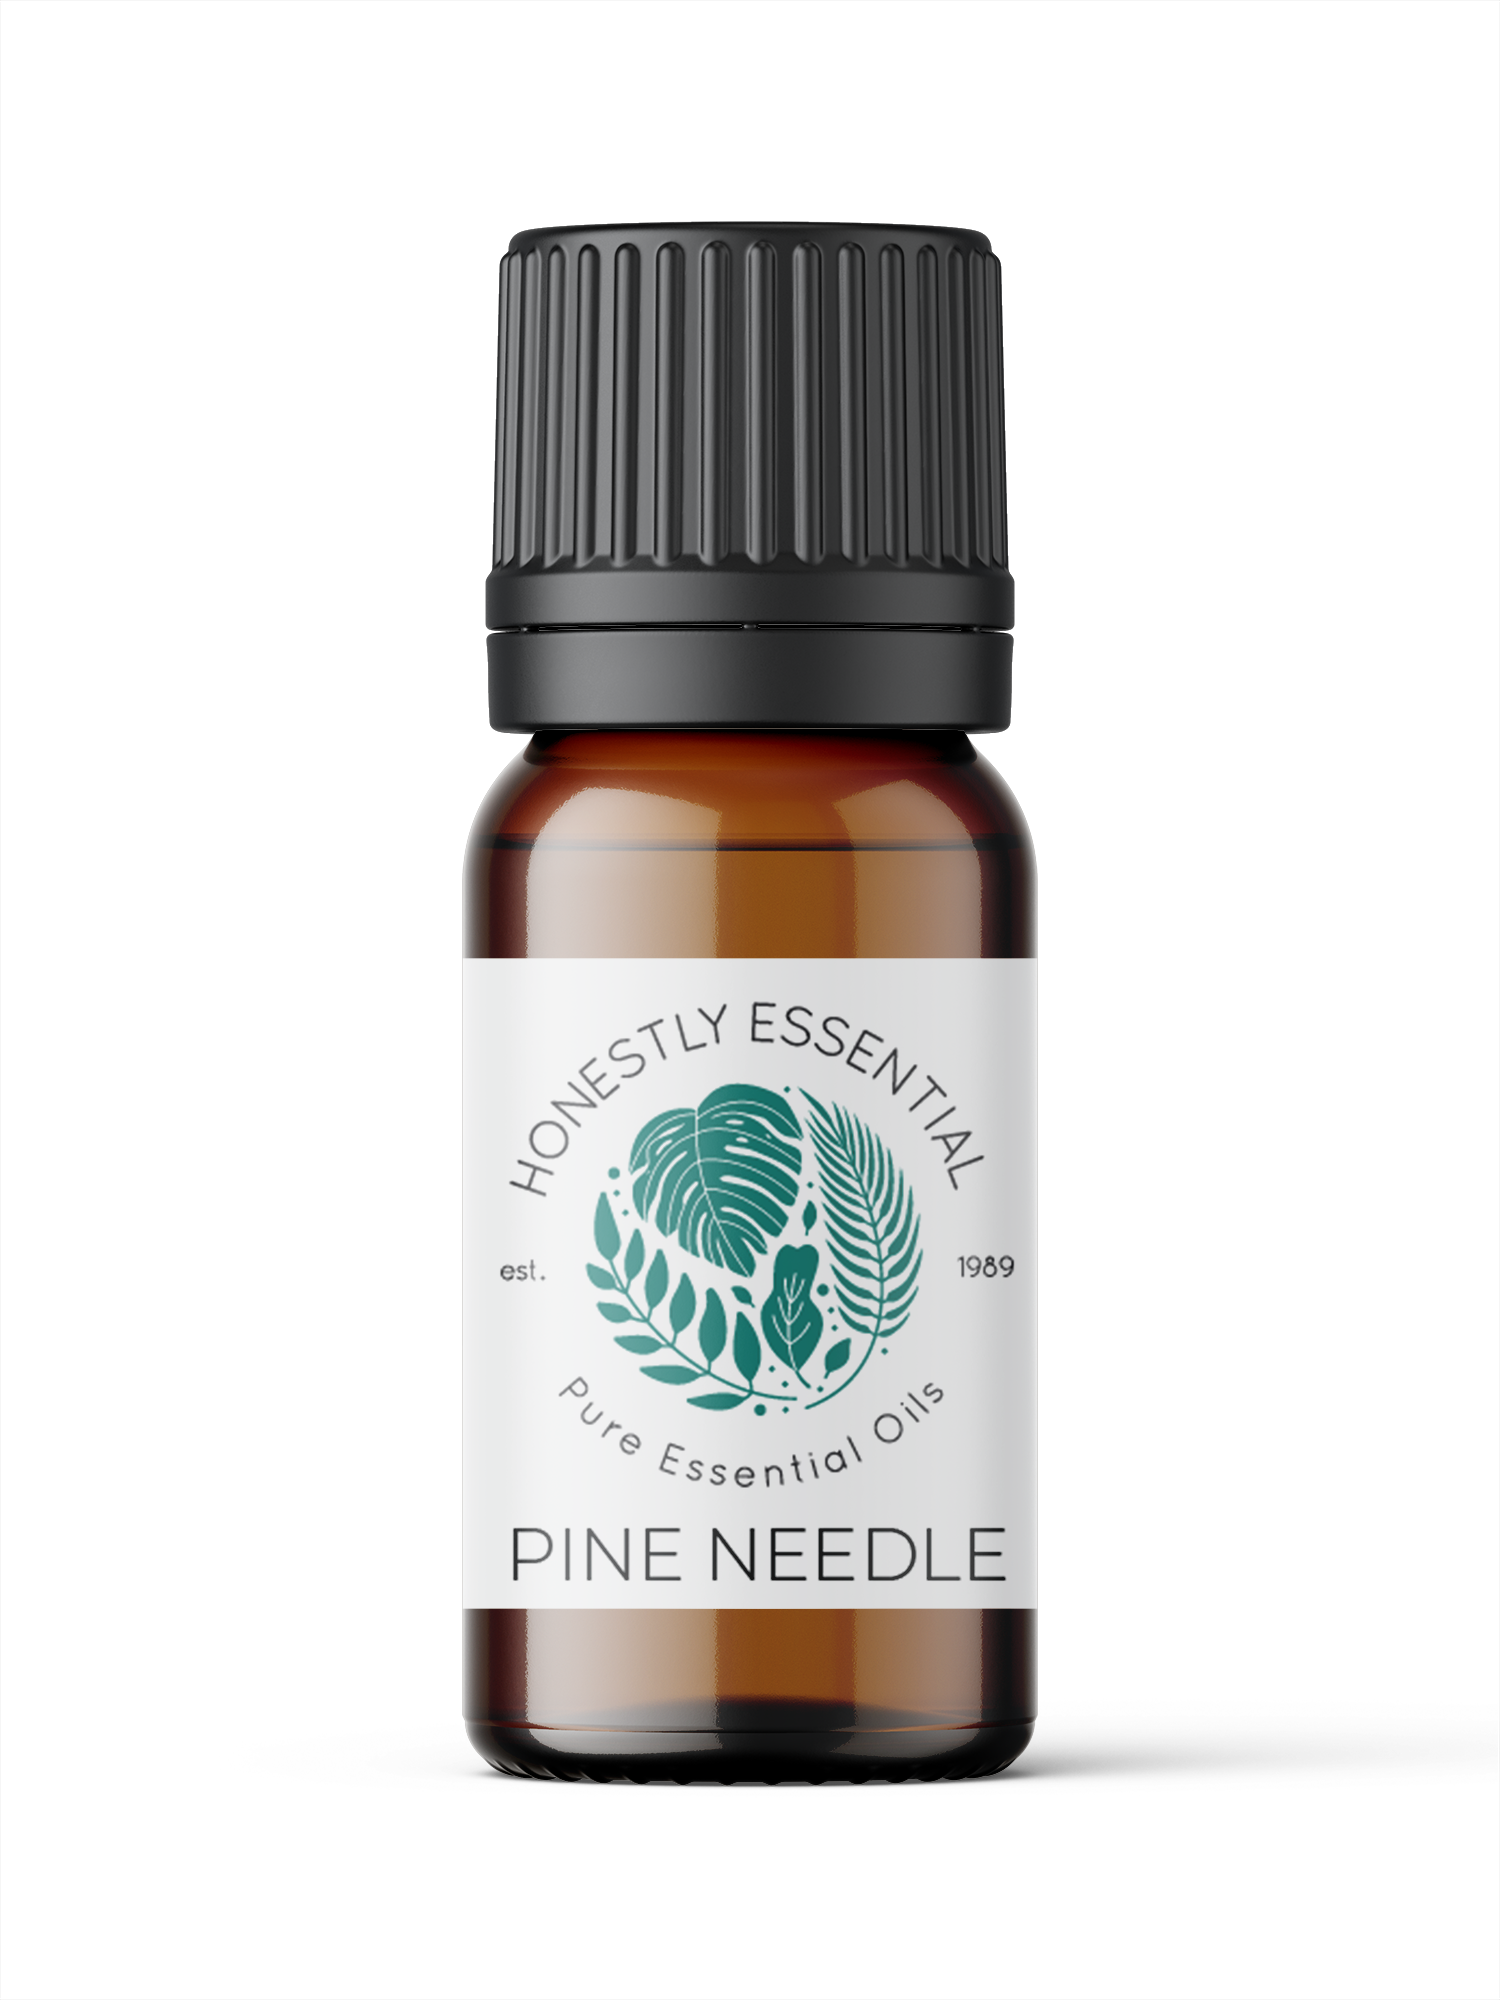 Pine Needle Essential Oil - Essential Oils | Honestly Essential Oils child, essential, Immunity, insect and pest repellent, kid, kid safe, needle, oil, organic, pine, safe, tree, tree essenti